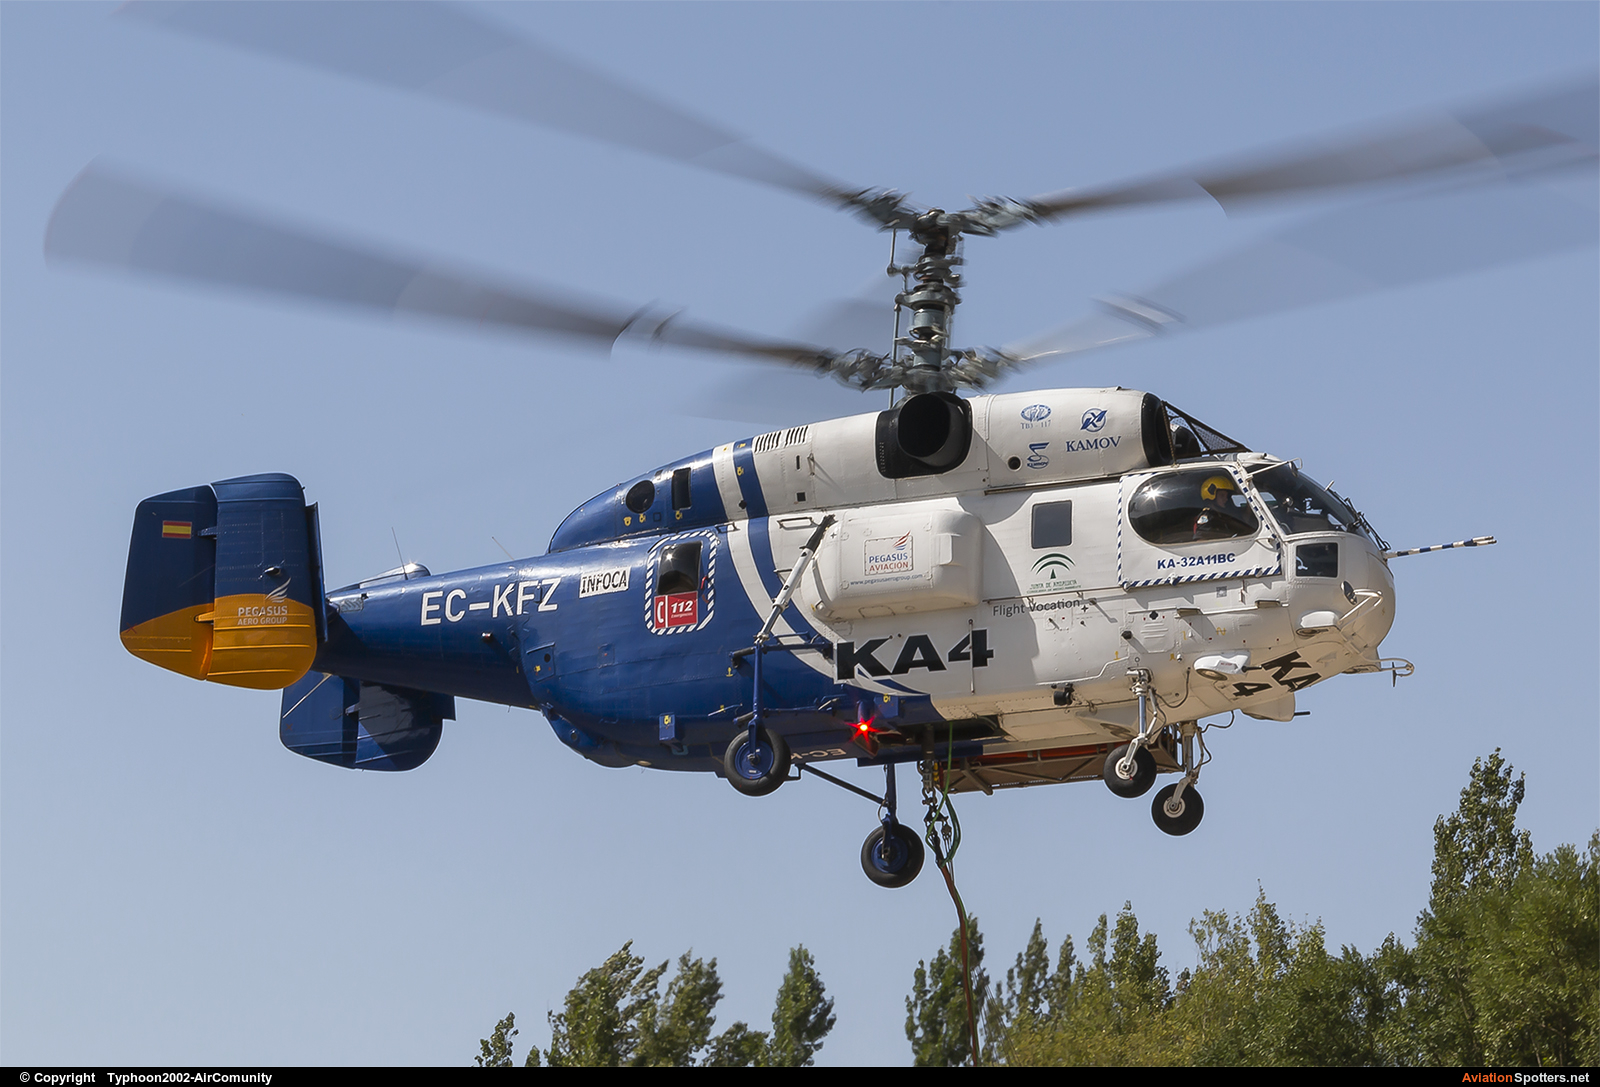   Ka-32 (all models)  (EC-KFZ) By Typhoon2002-AirComunity (AirComunity)